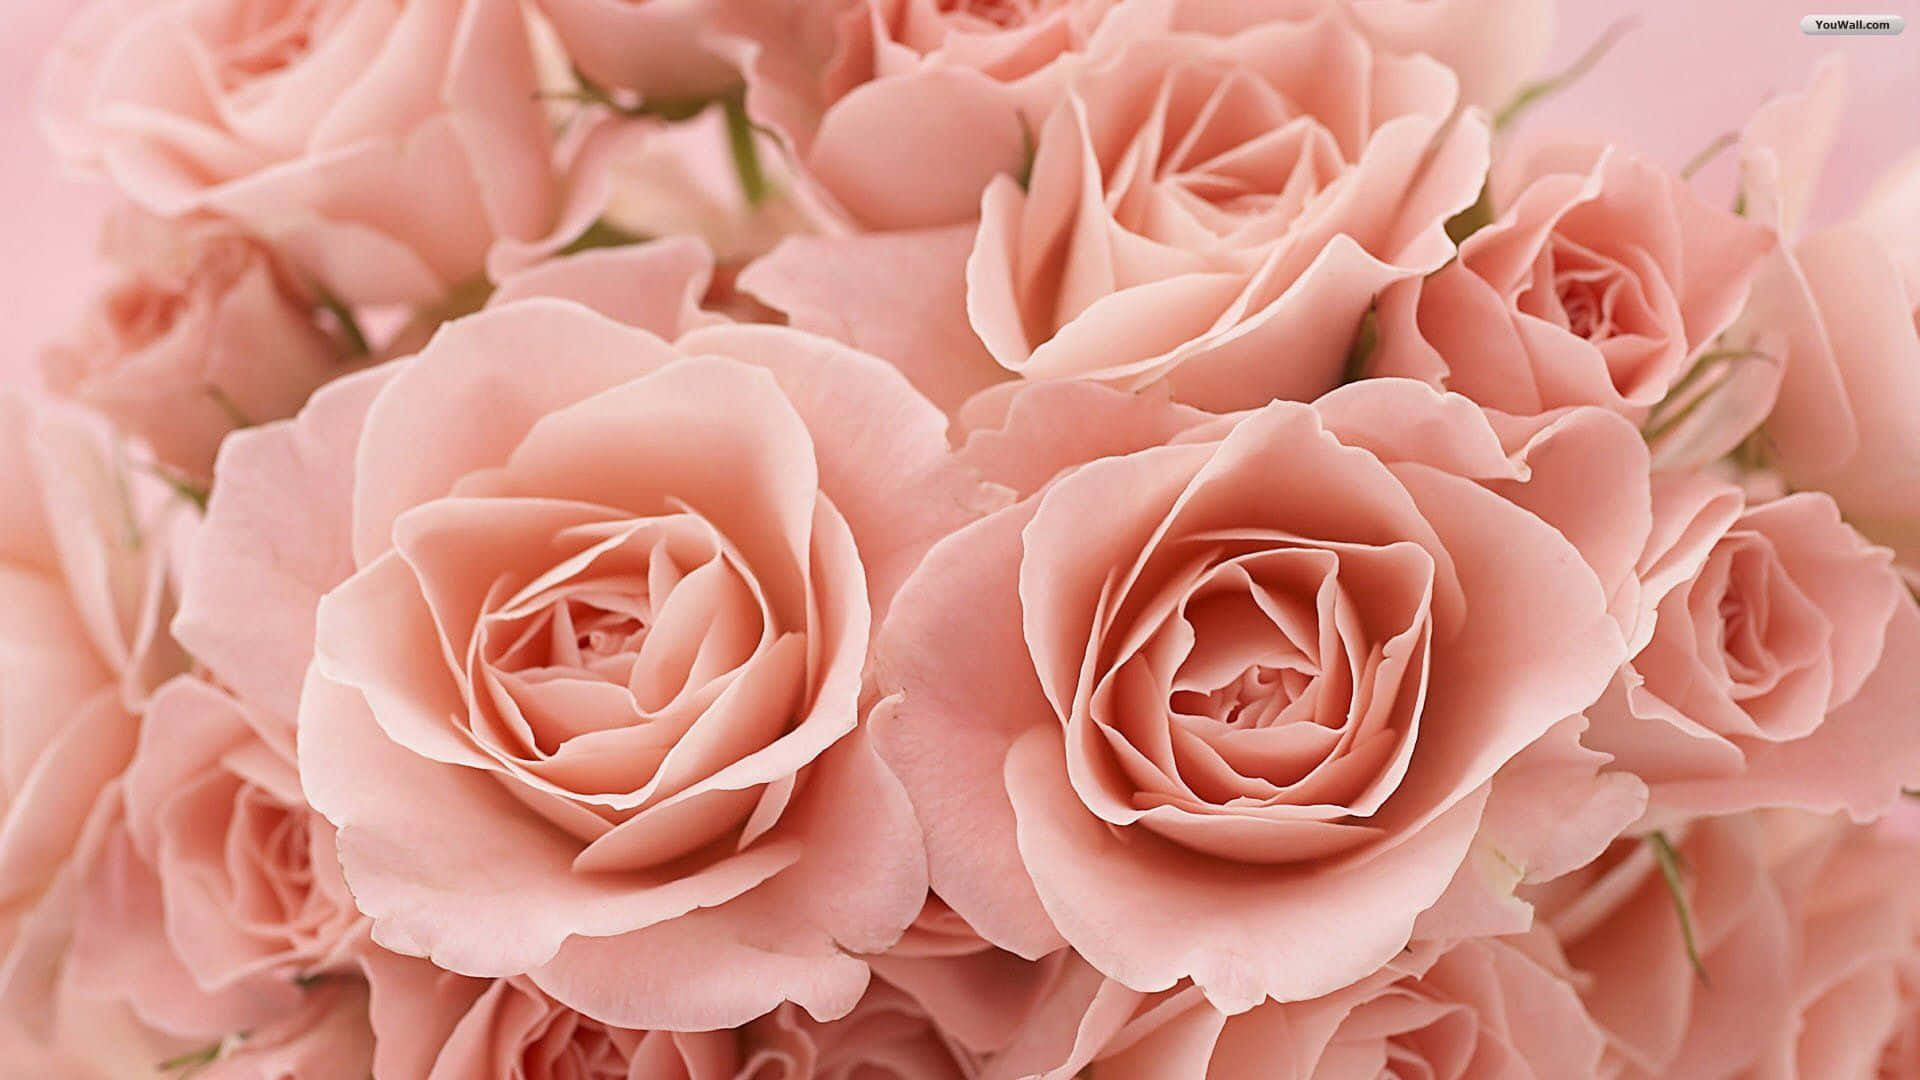 Einstrauß Lebendiger Rosen, Um Deinen Tag Aufzuhellen Wallpaper